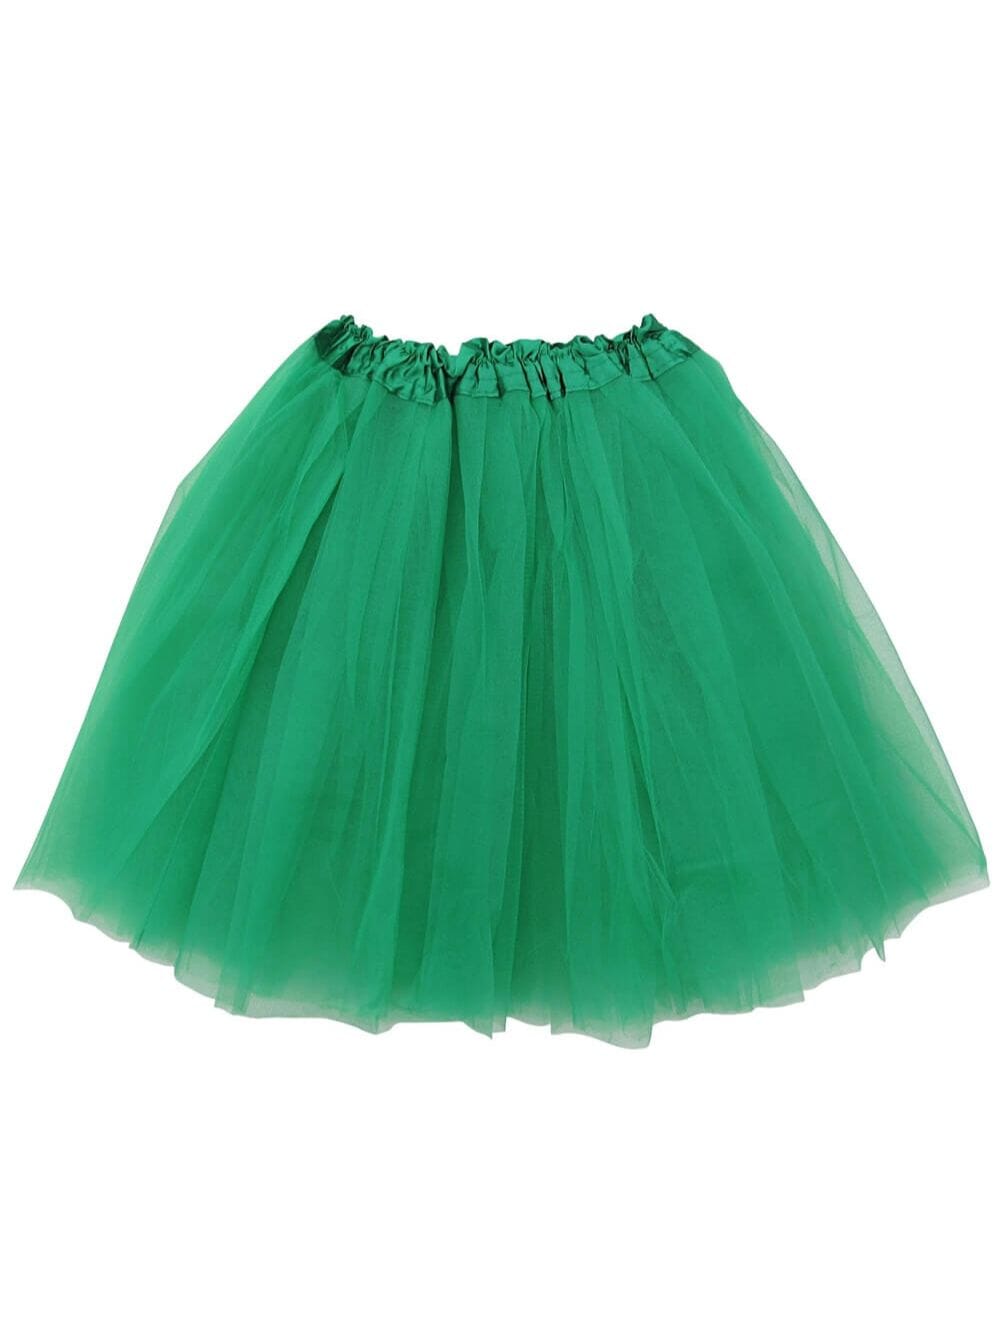 Green Tutu Skirt for Adult - Women's Size 3-Layer Basic Ballet Costume Dance Tutus - Sydney So Sweet